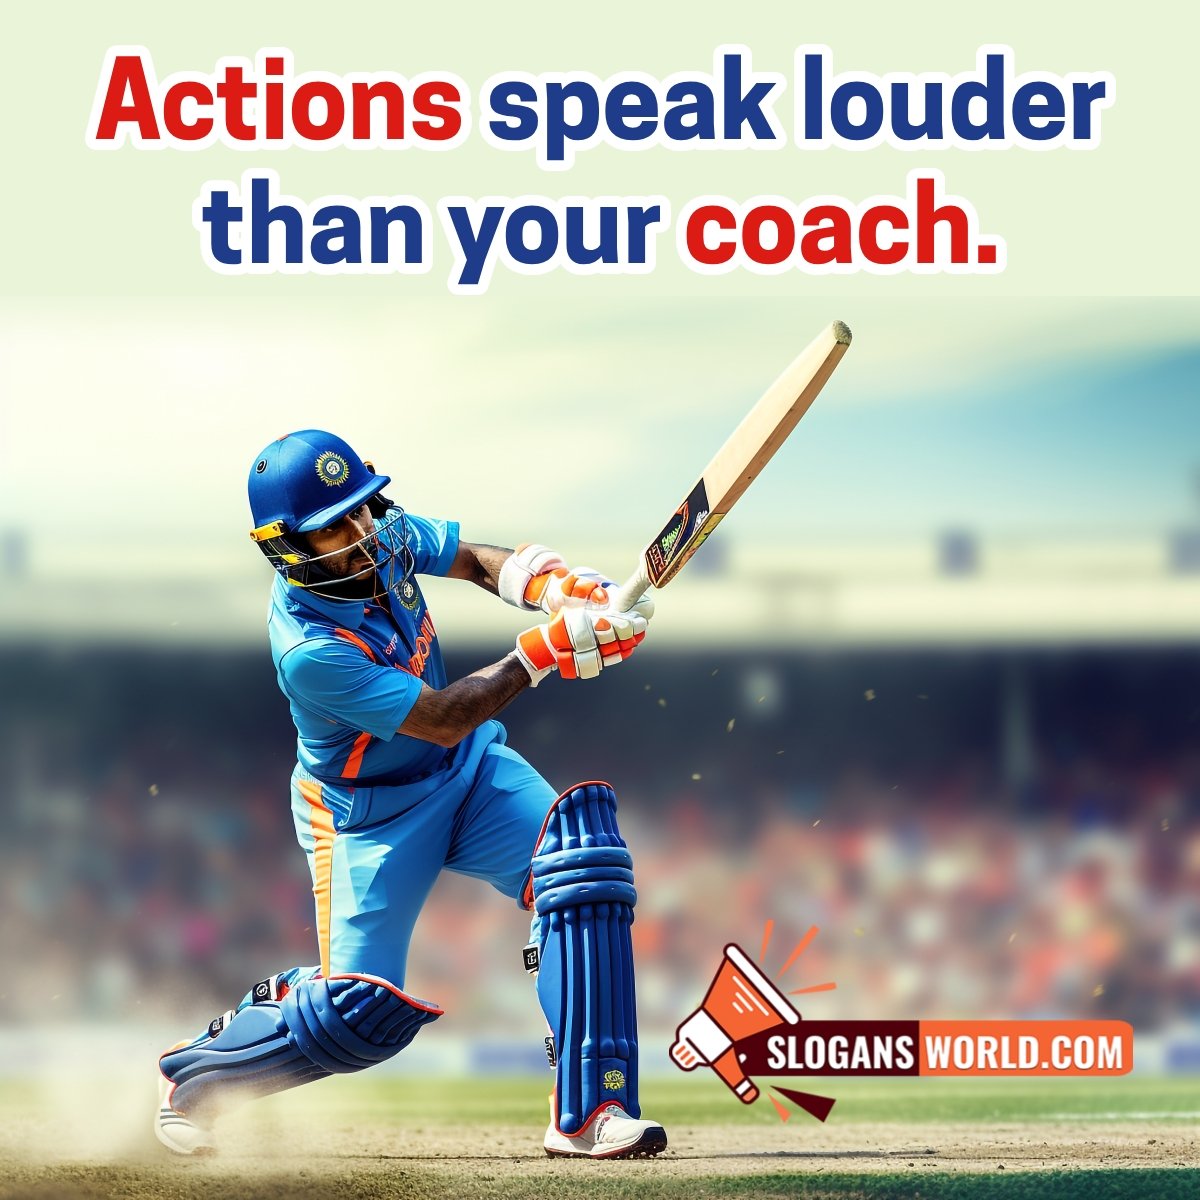 Slogan On Cricket